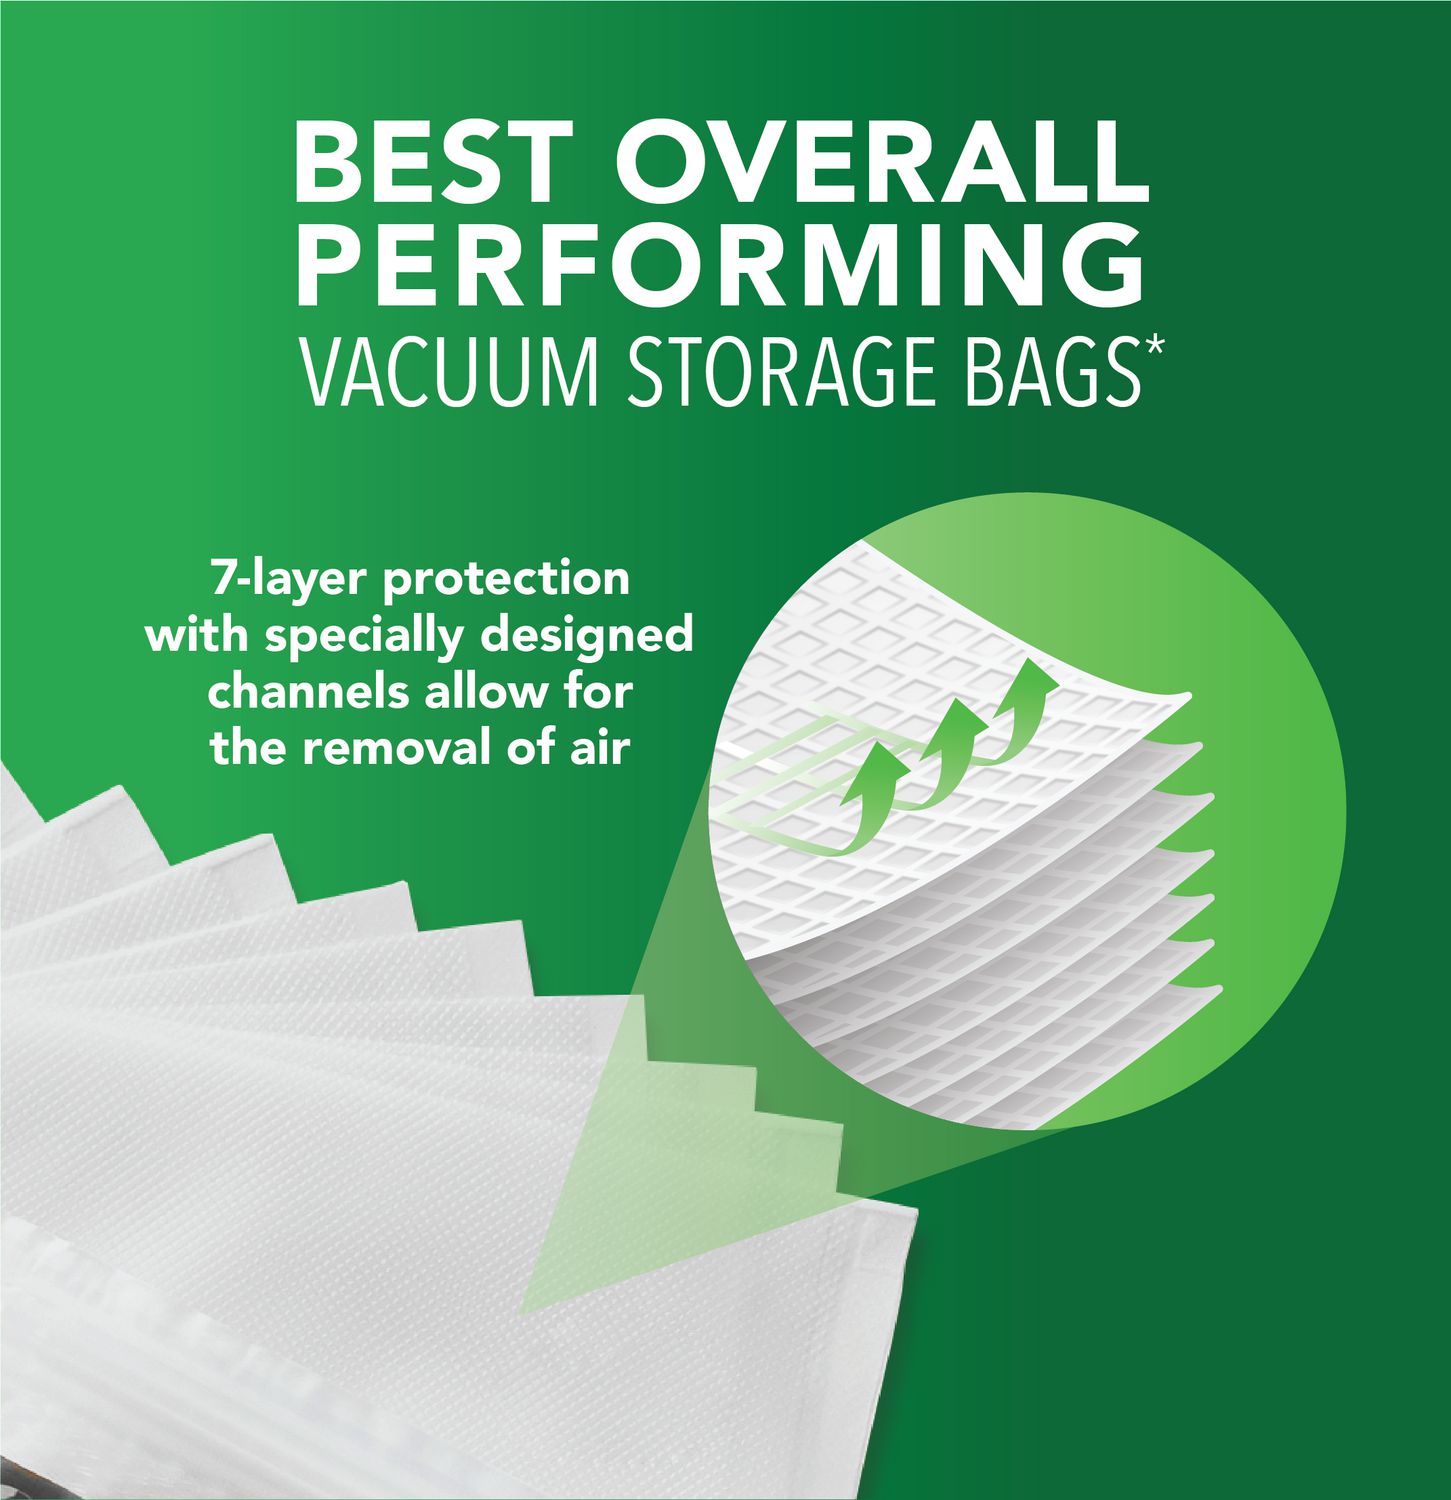 FoodSaver® Gallon Size Heat-Seal Vacuum Sealer Bags, 32 Count